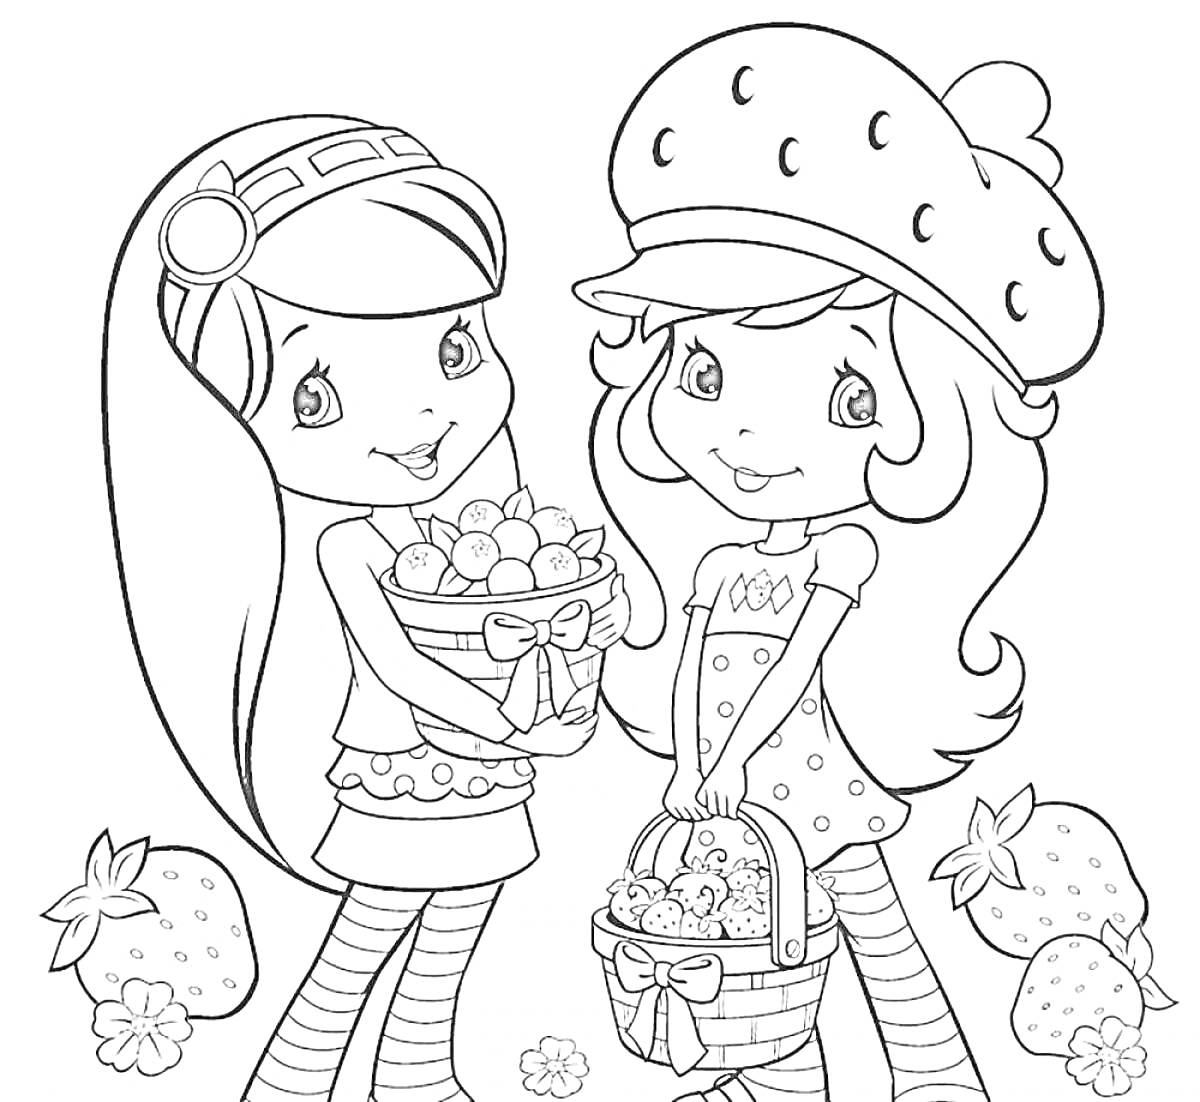 Раскраска Две девочки в полосатых чулках держат корзины с клубникой, вокруг лежат клубники и цветы